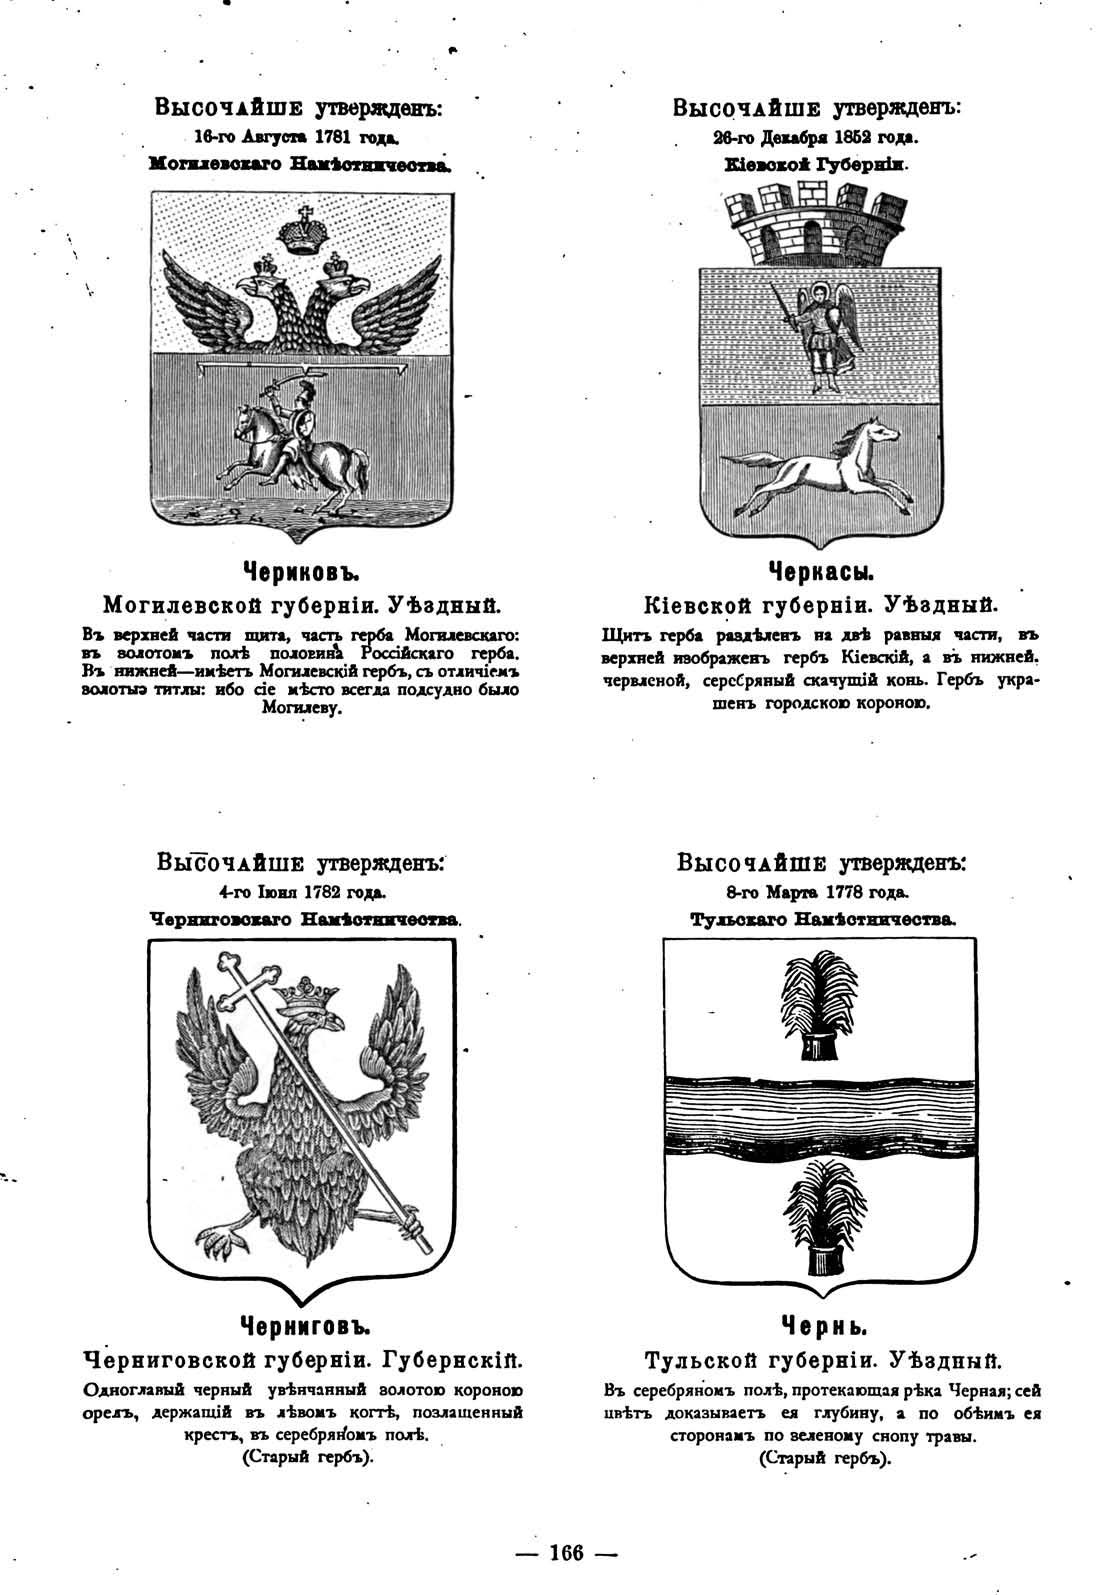 Герб Чернигова в Российской империи